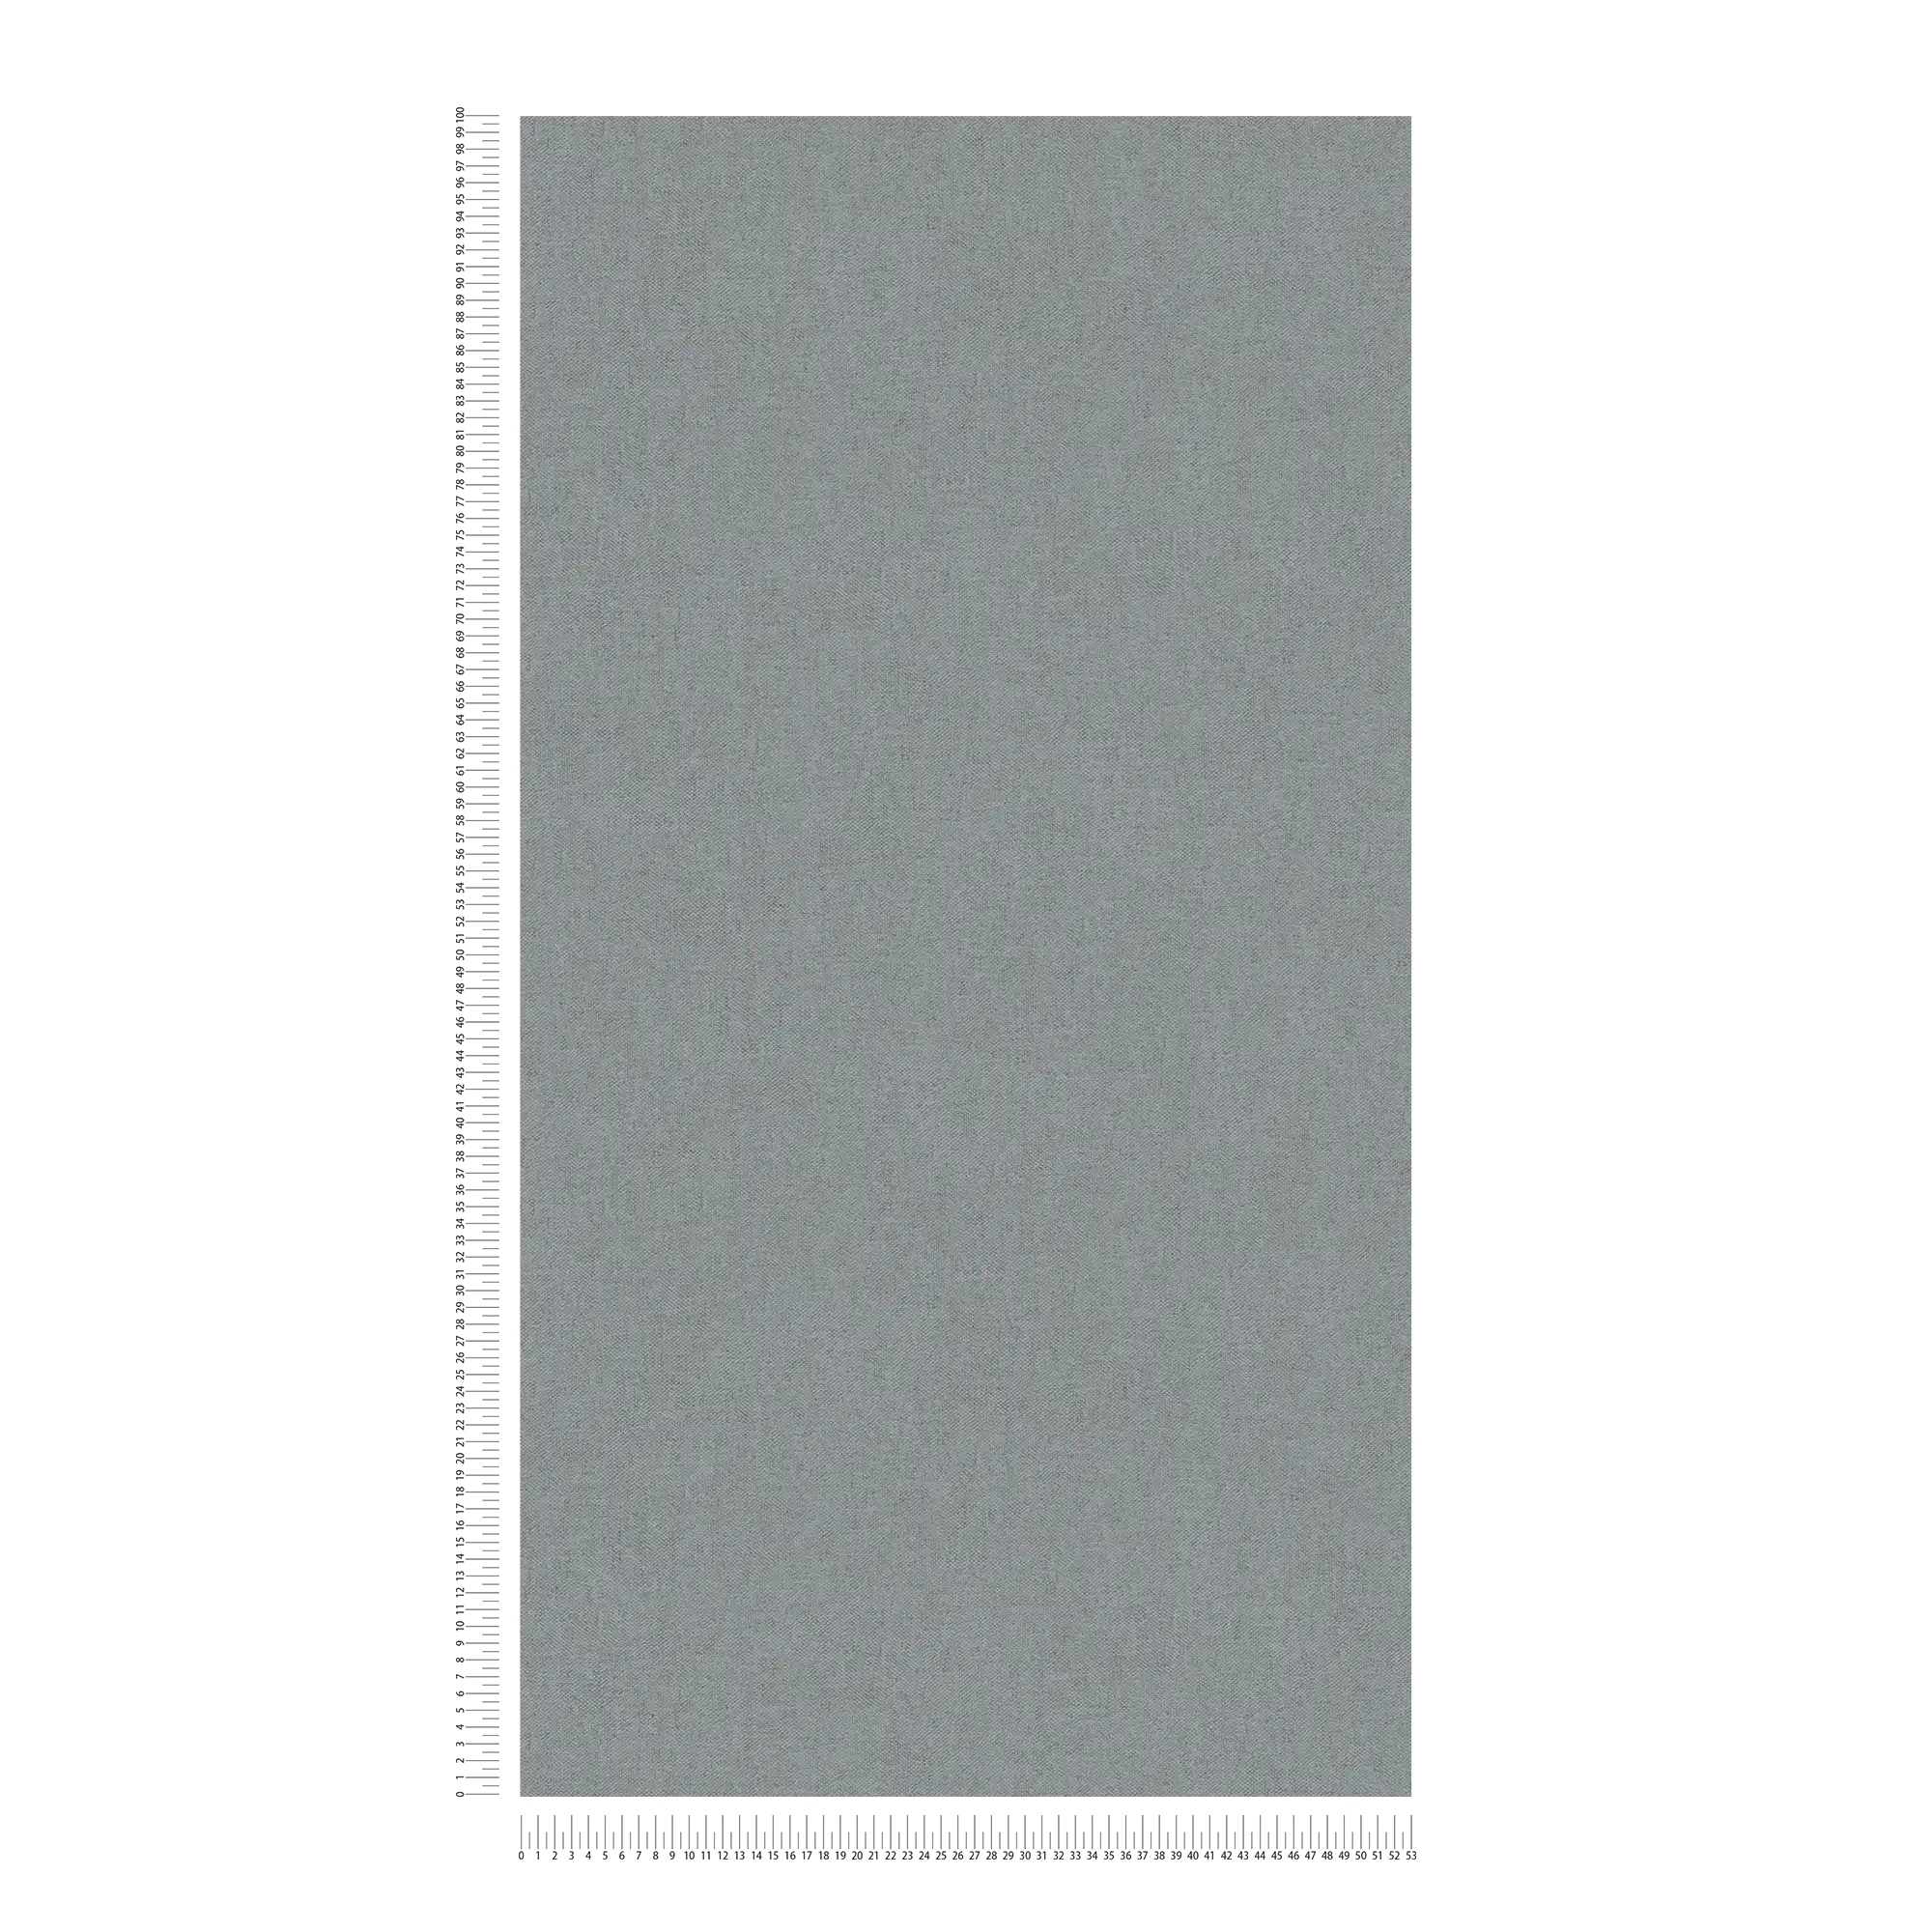             Textiel-look behang grijs loden met structuurpatroon
        